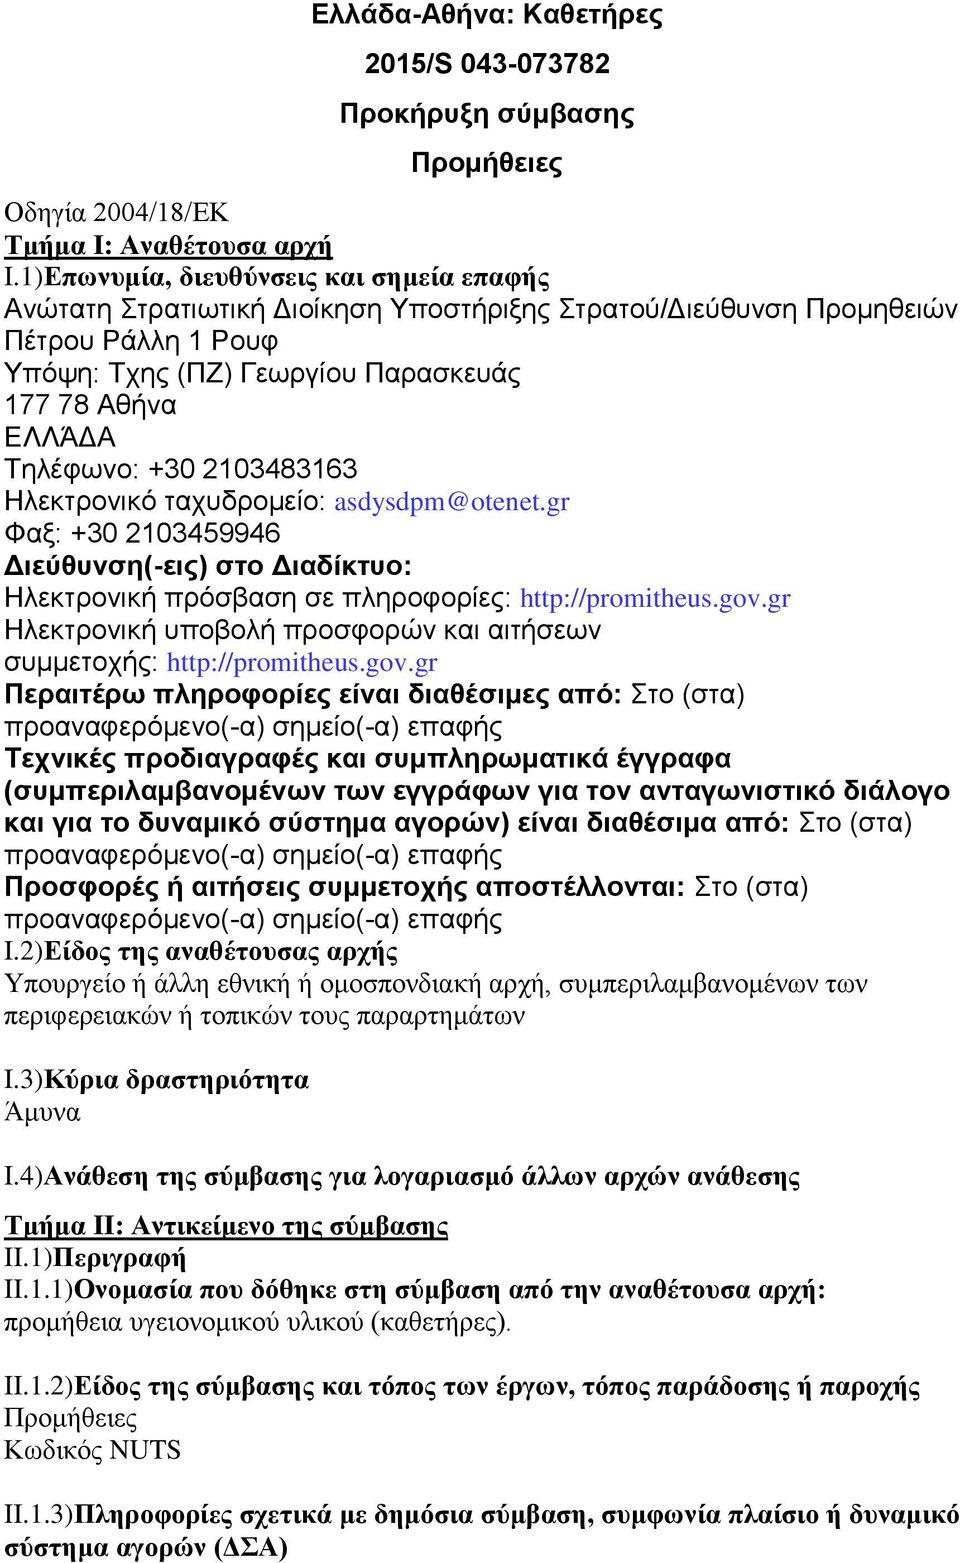 +30 2103483163 Ηλεκηπονικό ηασςδπομείο: asdysdpm@otenet.gr Φαξ: +30 2103459946 Διεύθςνζη(-ειρ) ζηο Διαδίκηςο: Ηλεκηπονική ππόζβαζη ζε πληποθοπίερ: http://promitheus.gov.